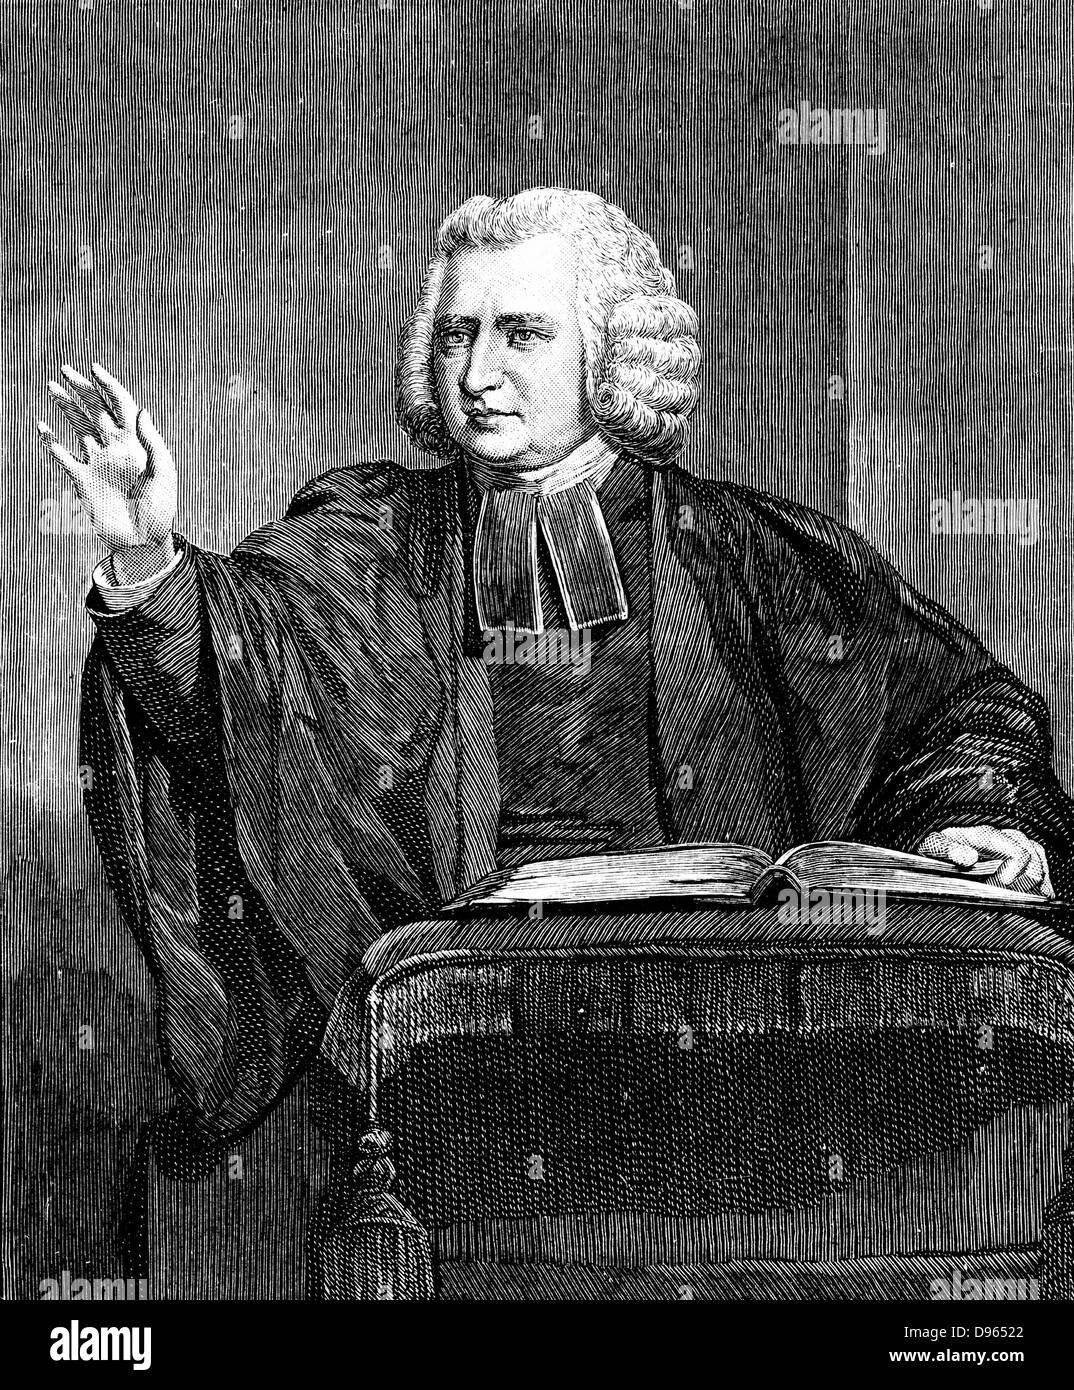 Charles Wesley (1707-88) englischen Prediger und Schriftsteller Hymne. Bruder von John Wesley (1703-1791). Unter den mehr als 5.500 Hymnen schrieb er waren "Jesu, Geliebter meiner Seele" "Göttliche Liebe, alle liebt überragend" und "Horch, der Herald Angels sing". Holzstich. Stockfoto